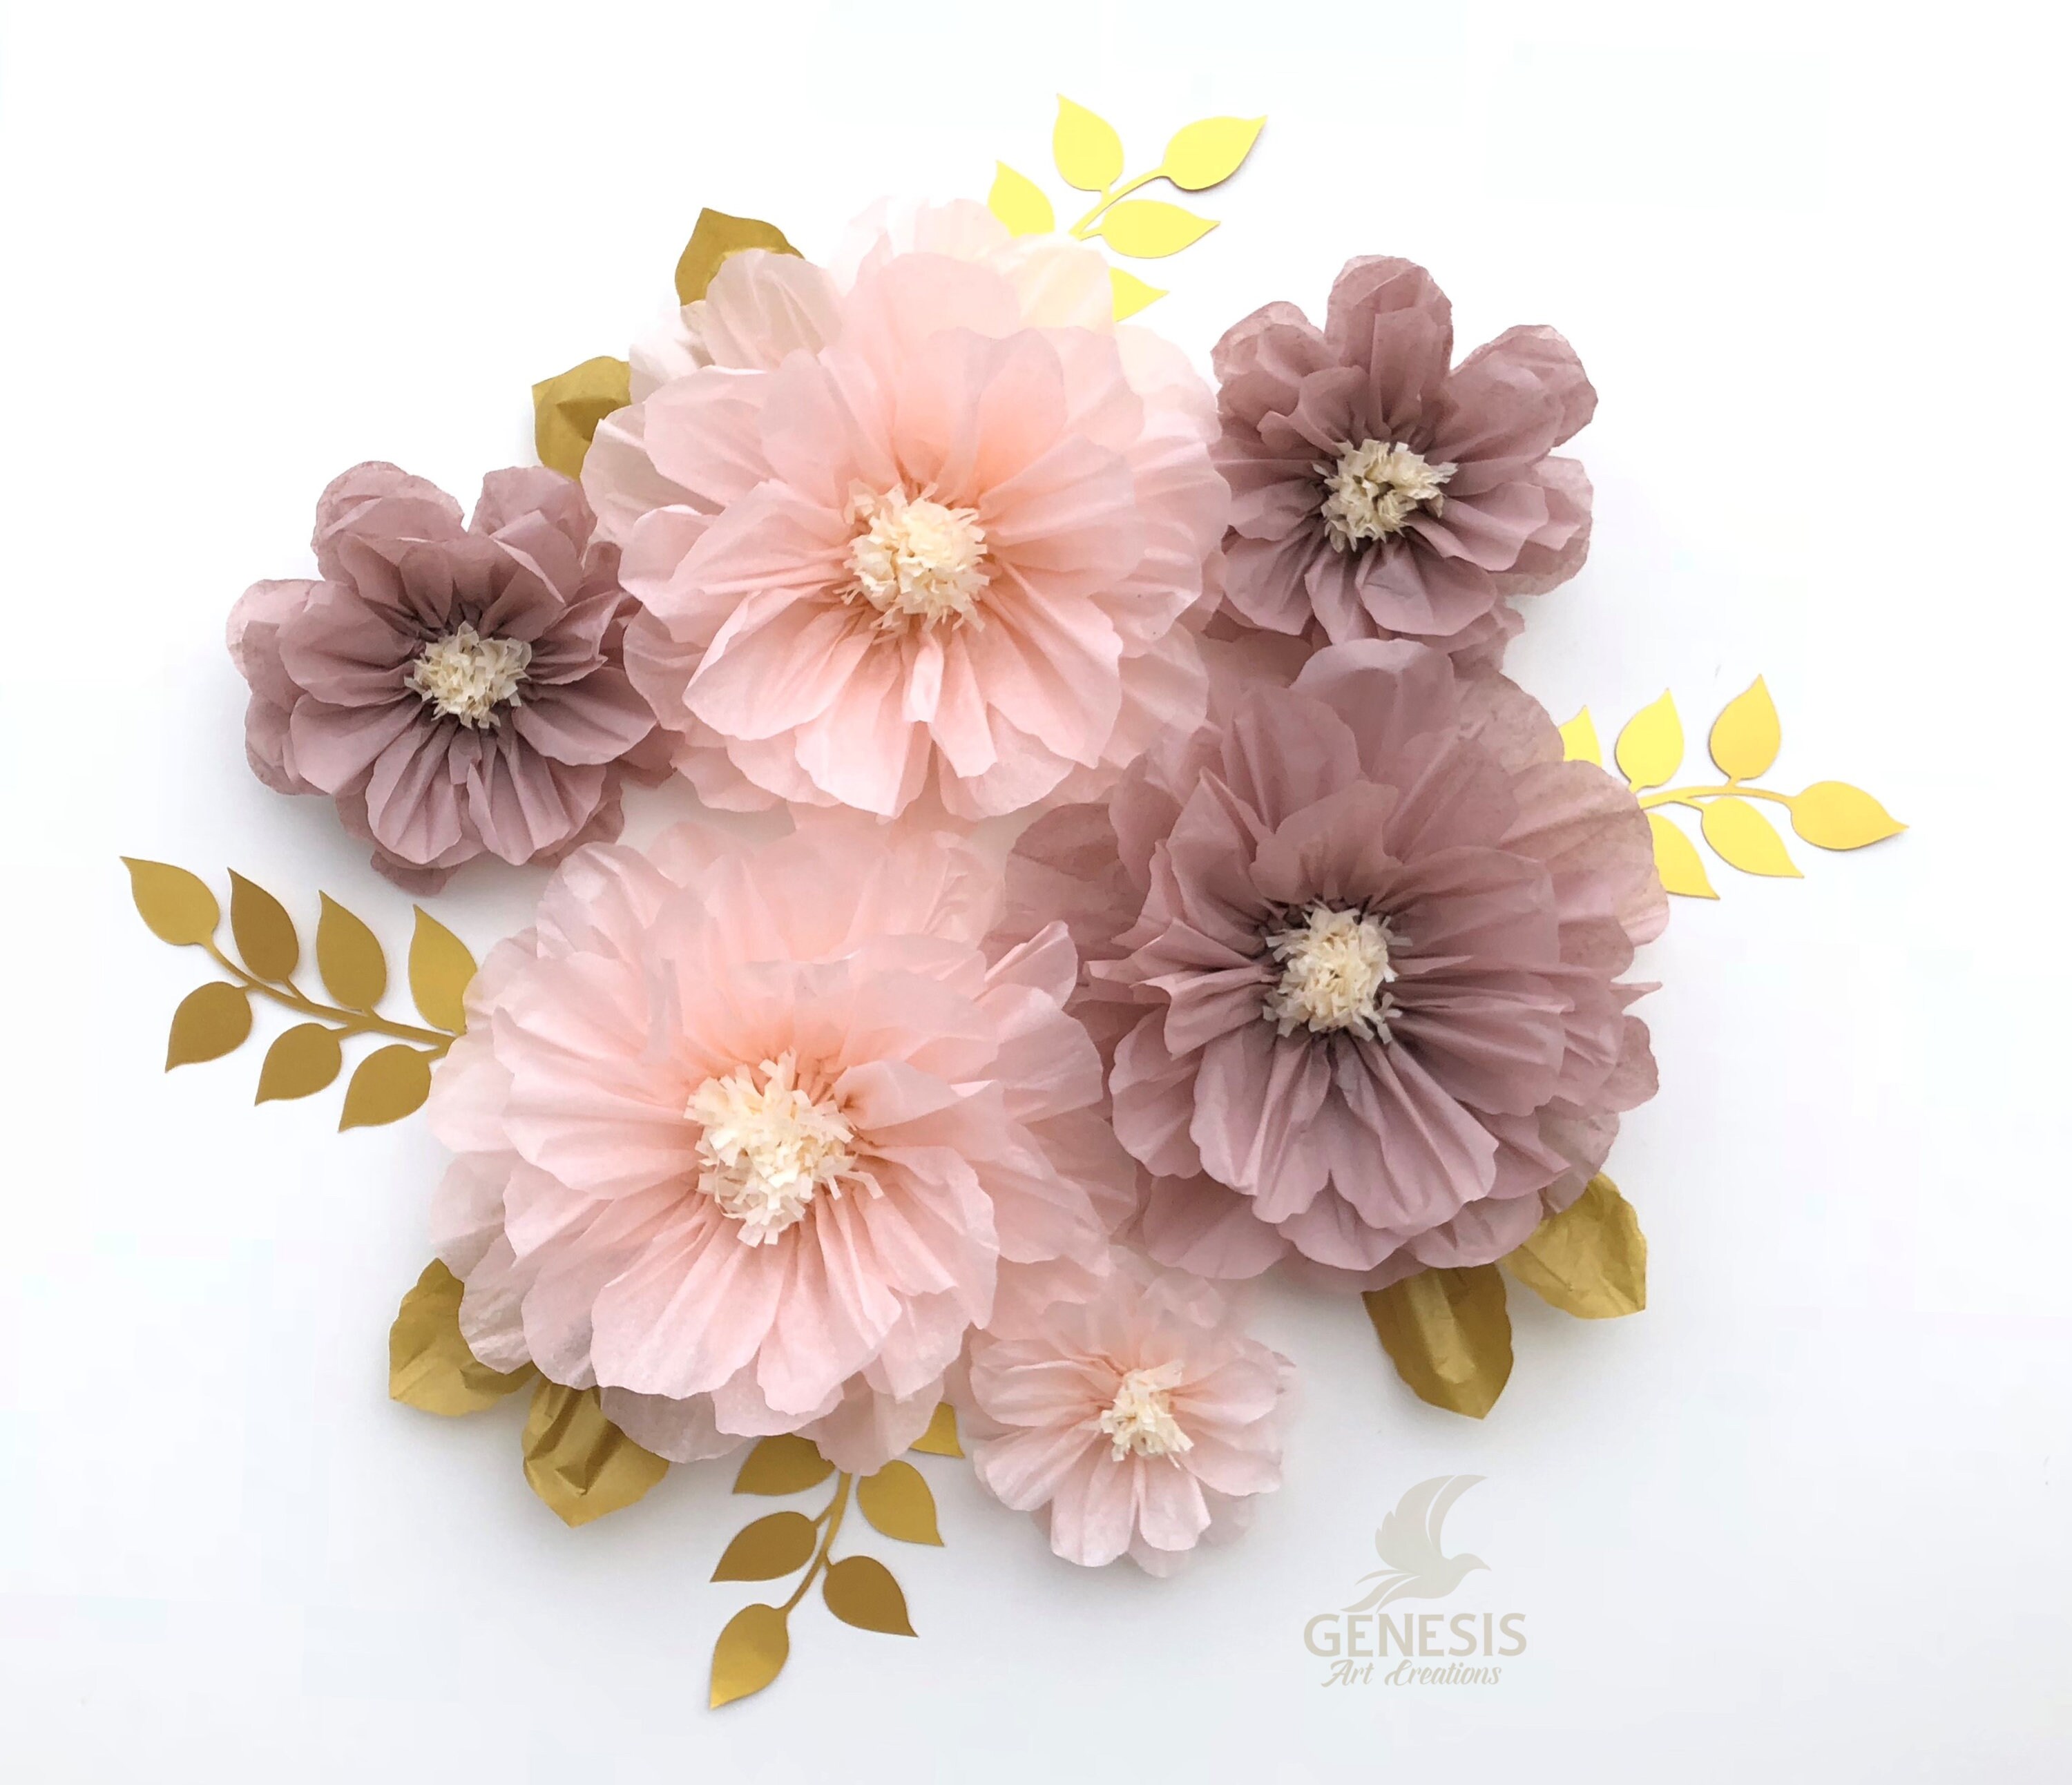 PAPER FLOWER Kit, small Tissue Paper Flowers, DIY Kids Kit 